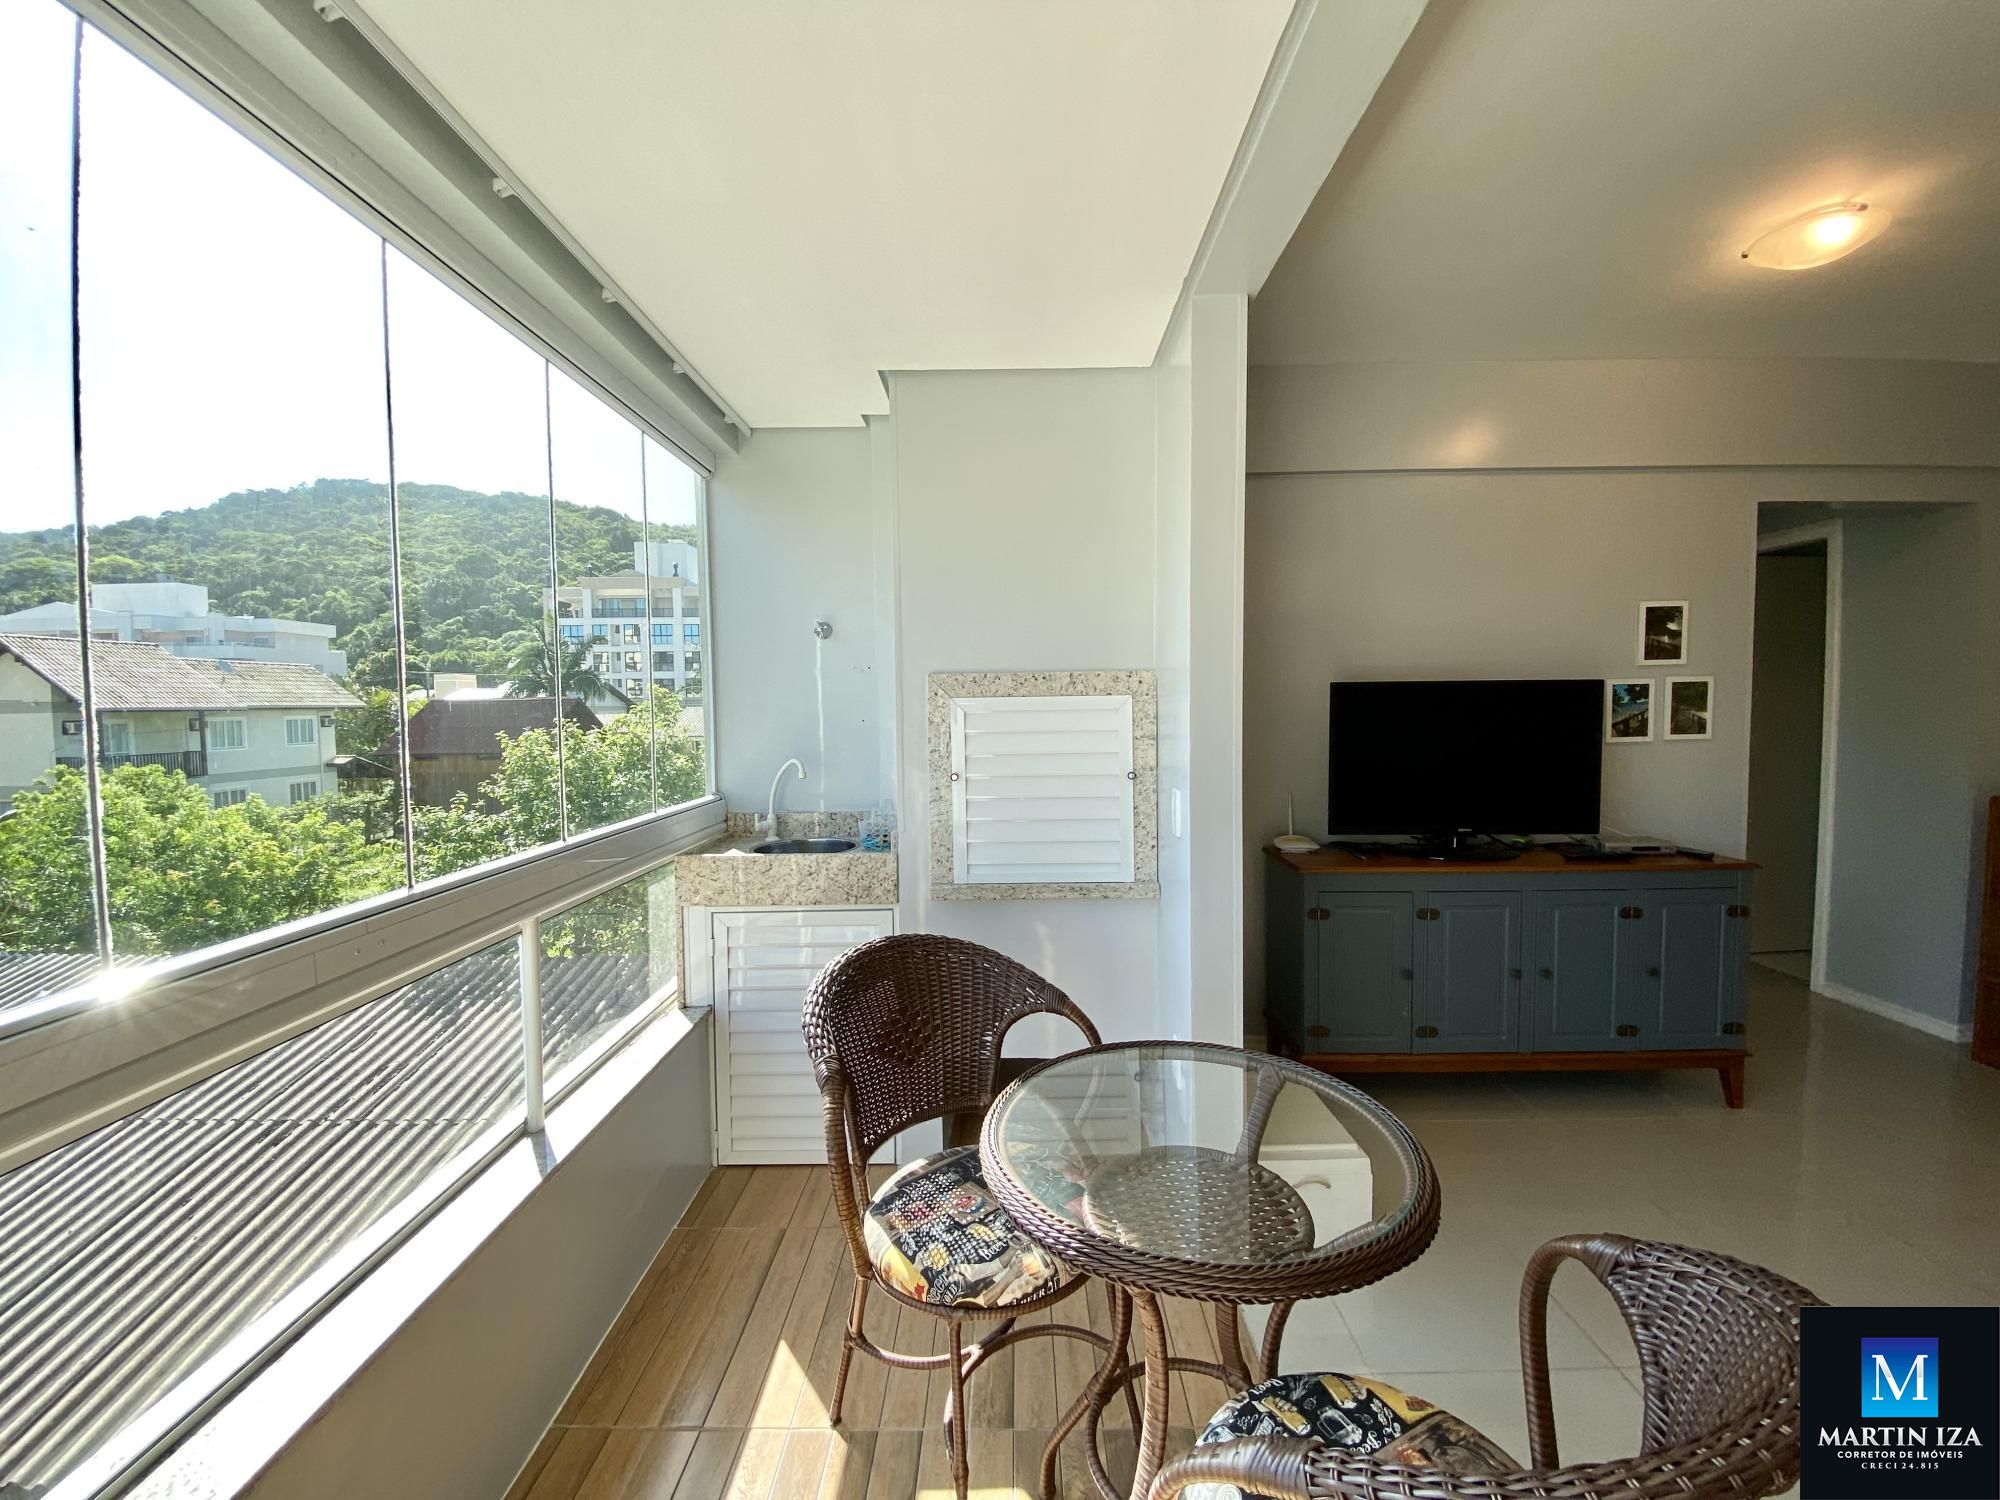 Apartamento com 2 Dormitórios para alugar, 70 m² por R$ 200,00